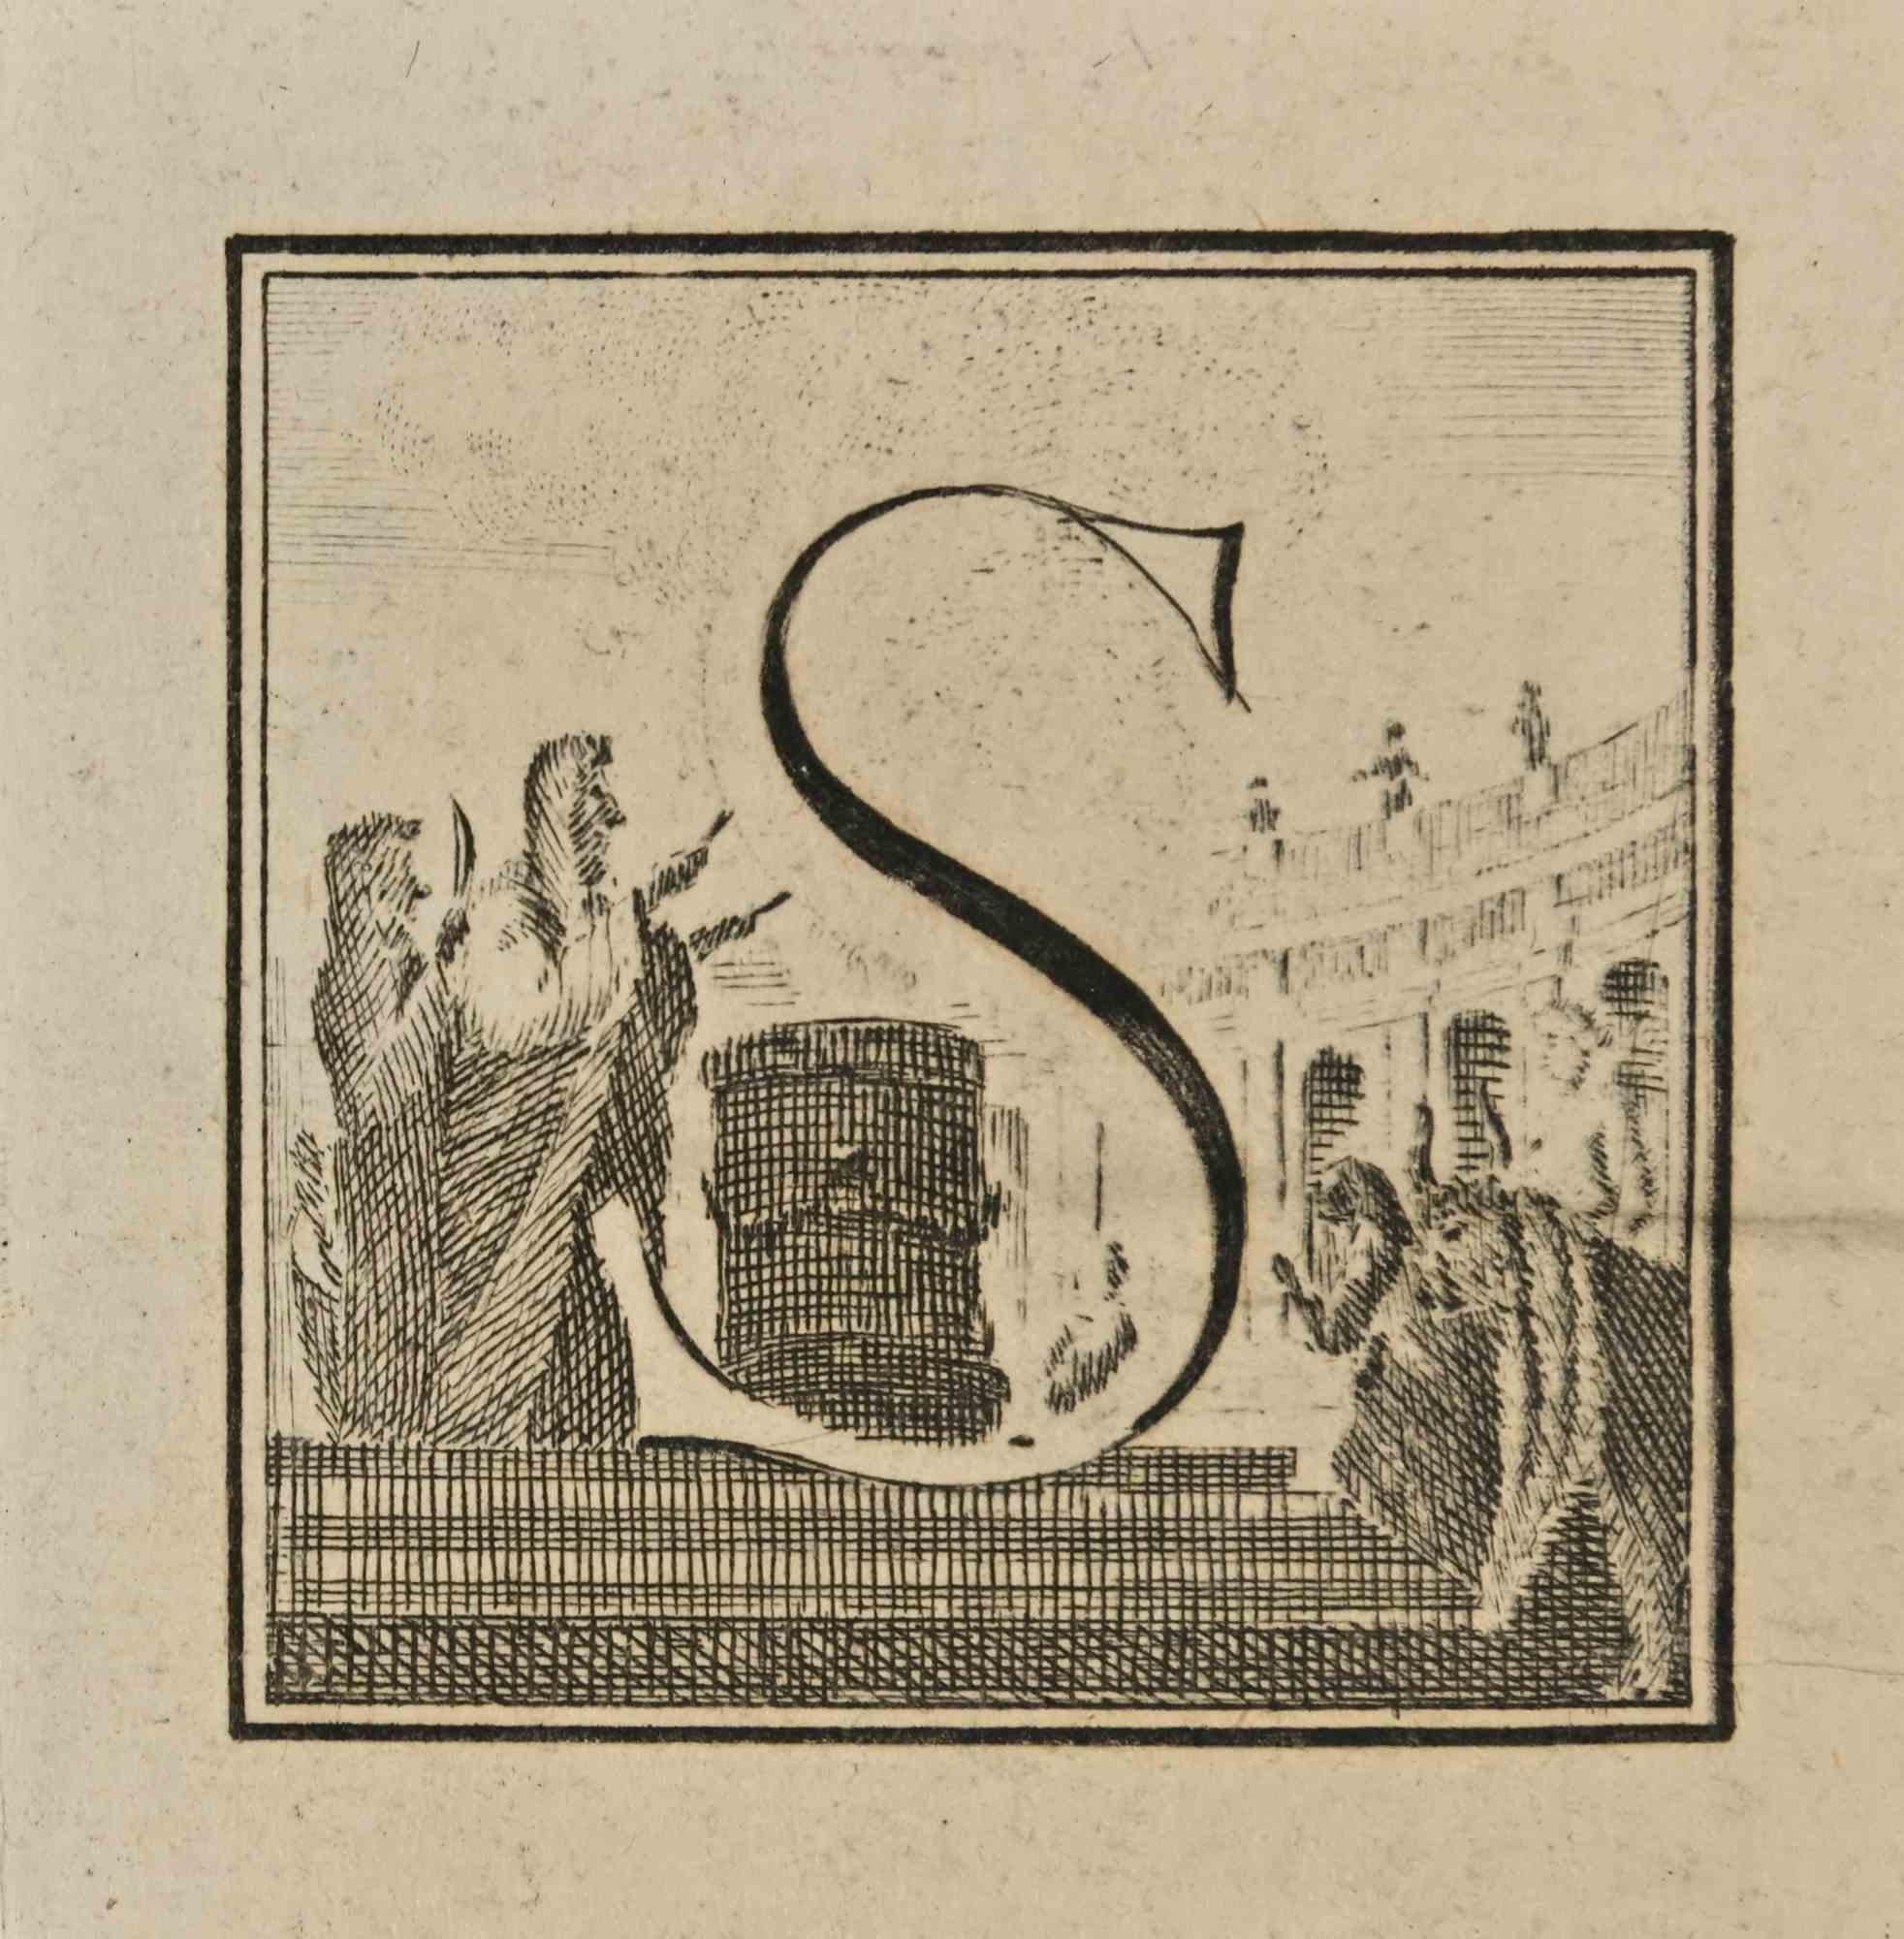 Lettre de l'alphabet S,  de la série "Antiquités d'Herculanum", est une gravure sur papier réalisée par Luigi Vanvitelli au 18ème siècle.

Bon état avec des pliures.

La gravure appartient à la suite d'estampes "Antiquités d'Herculanum exposées"